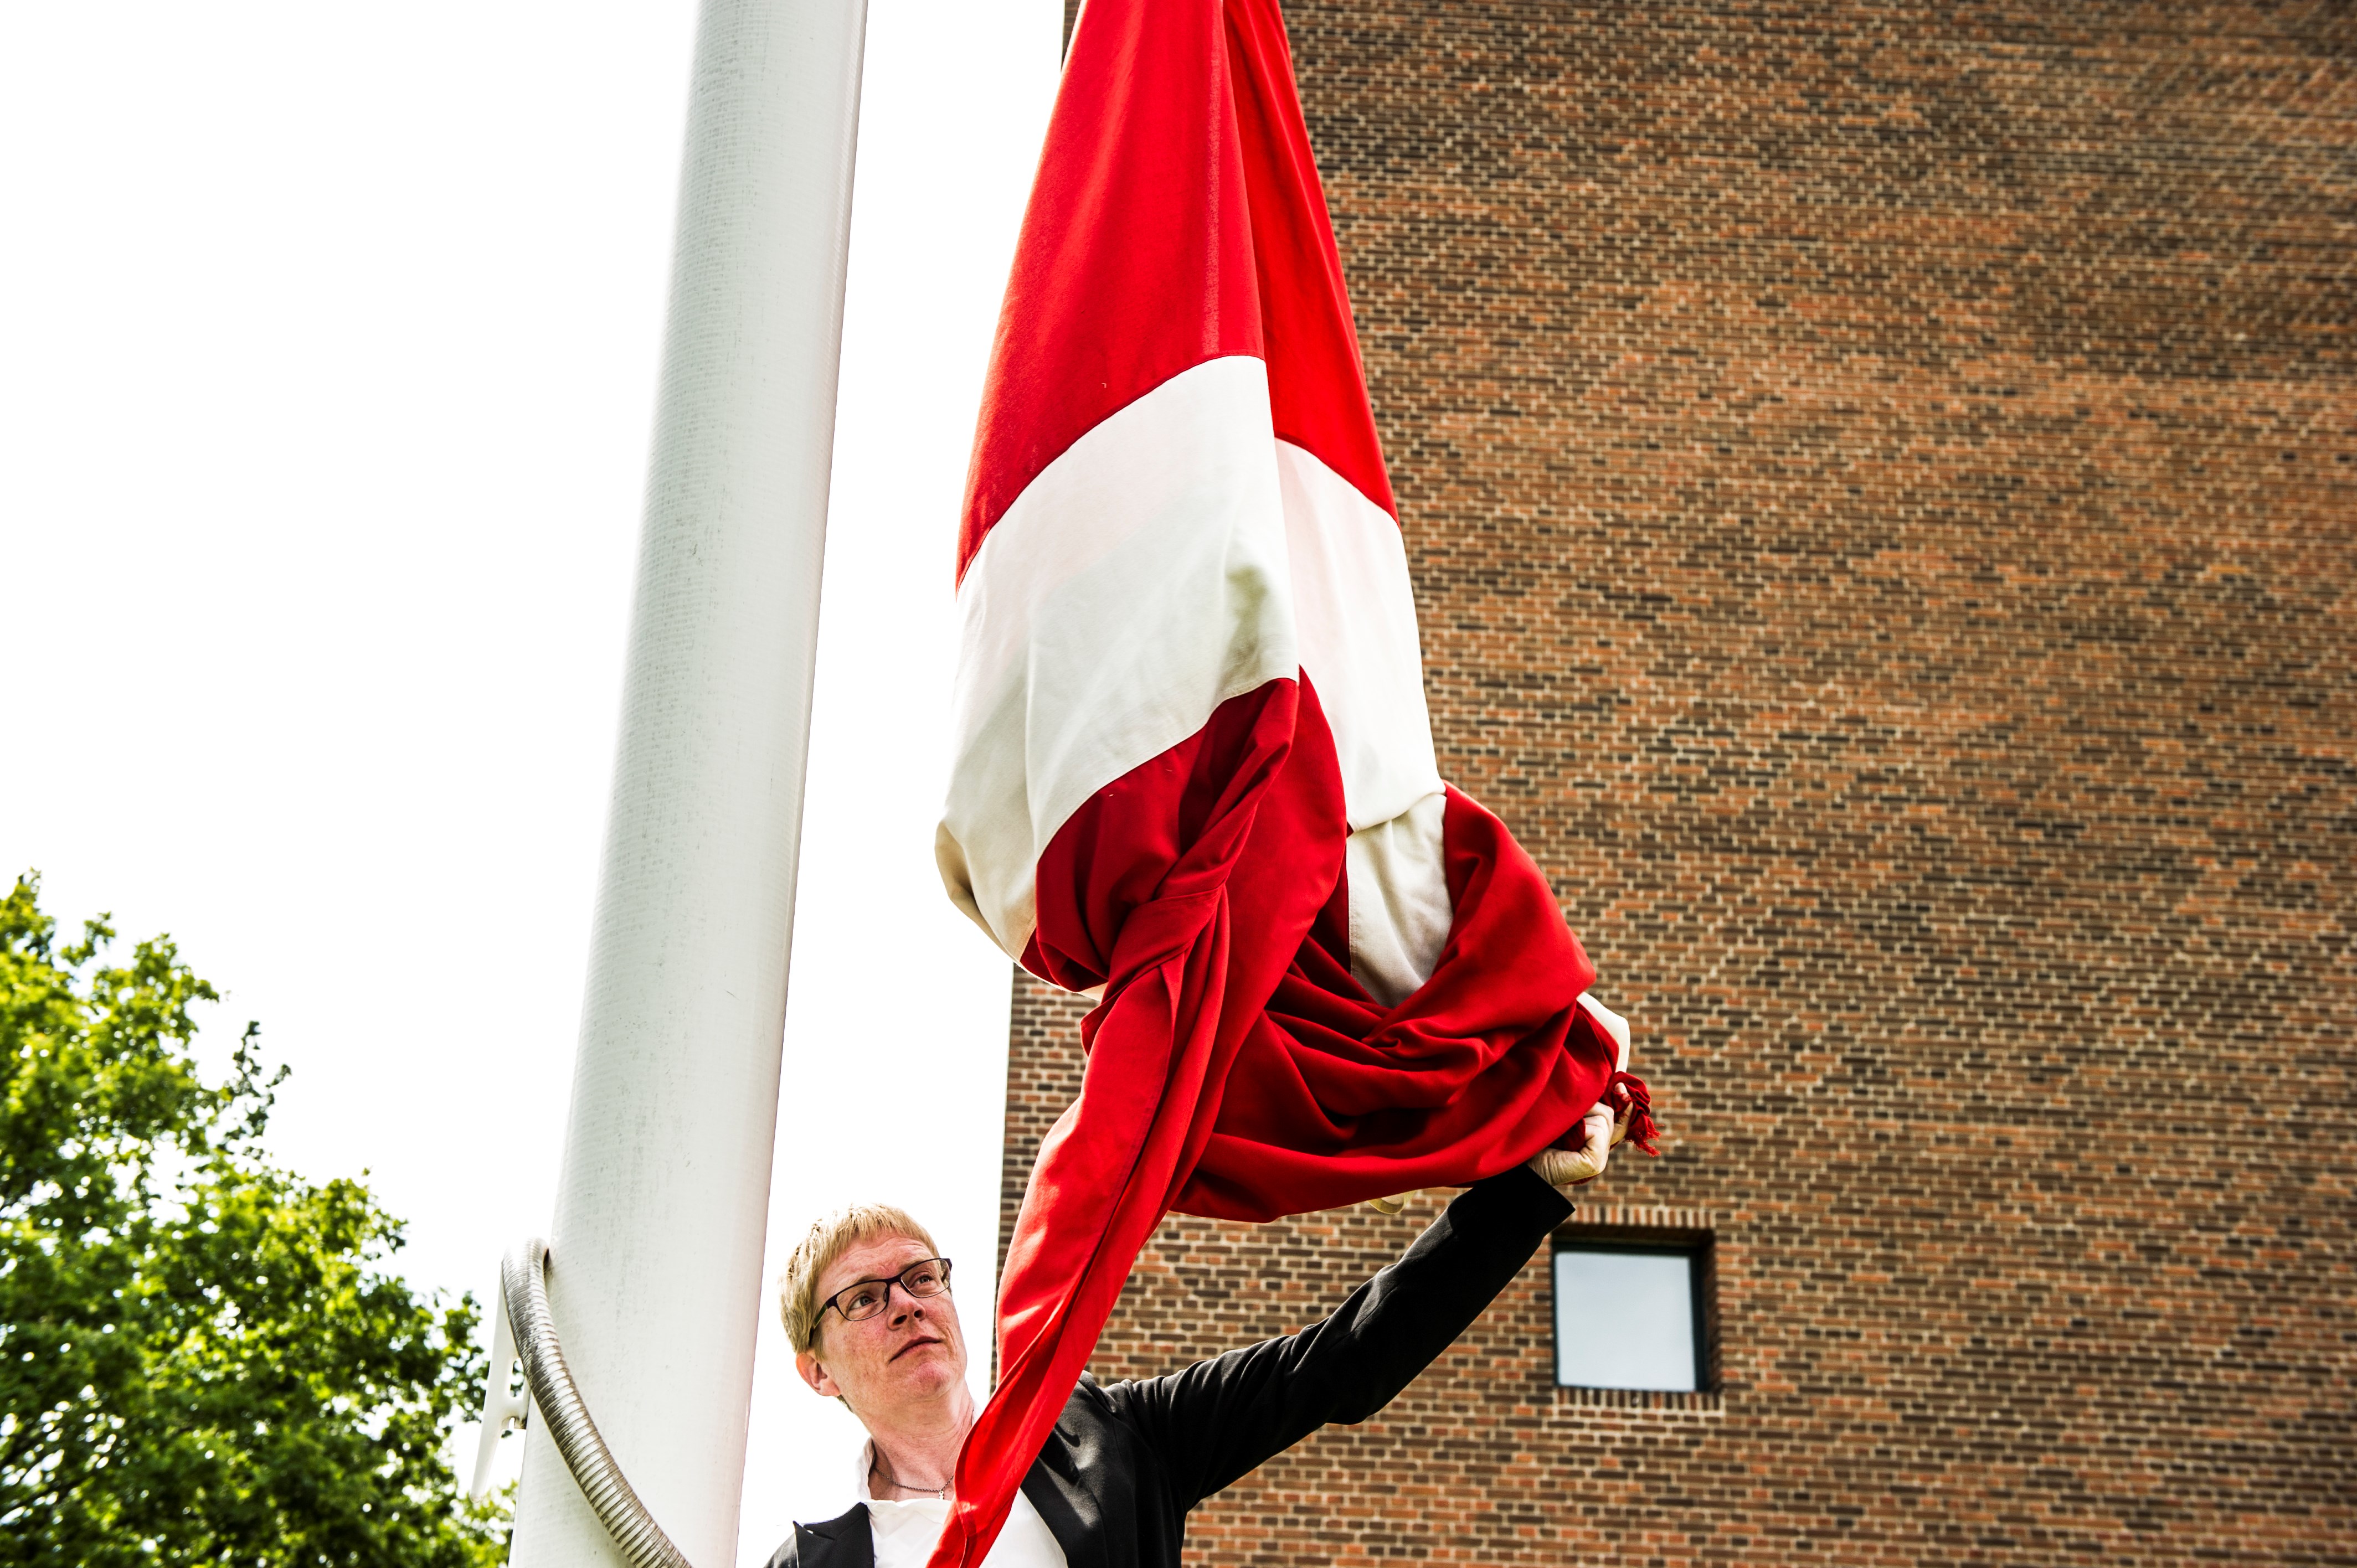 ansat kirketjener hejser flag folkekirken.dk.jpg